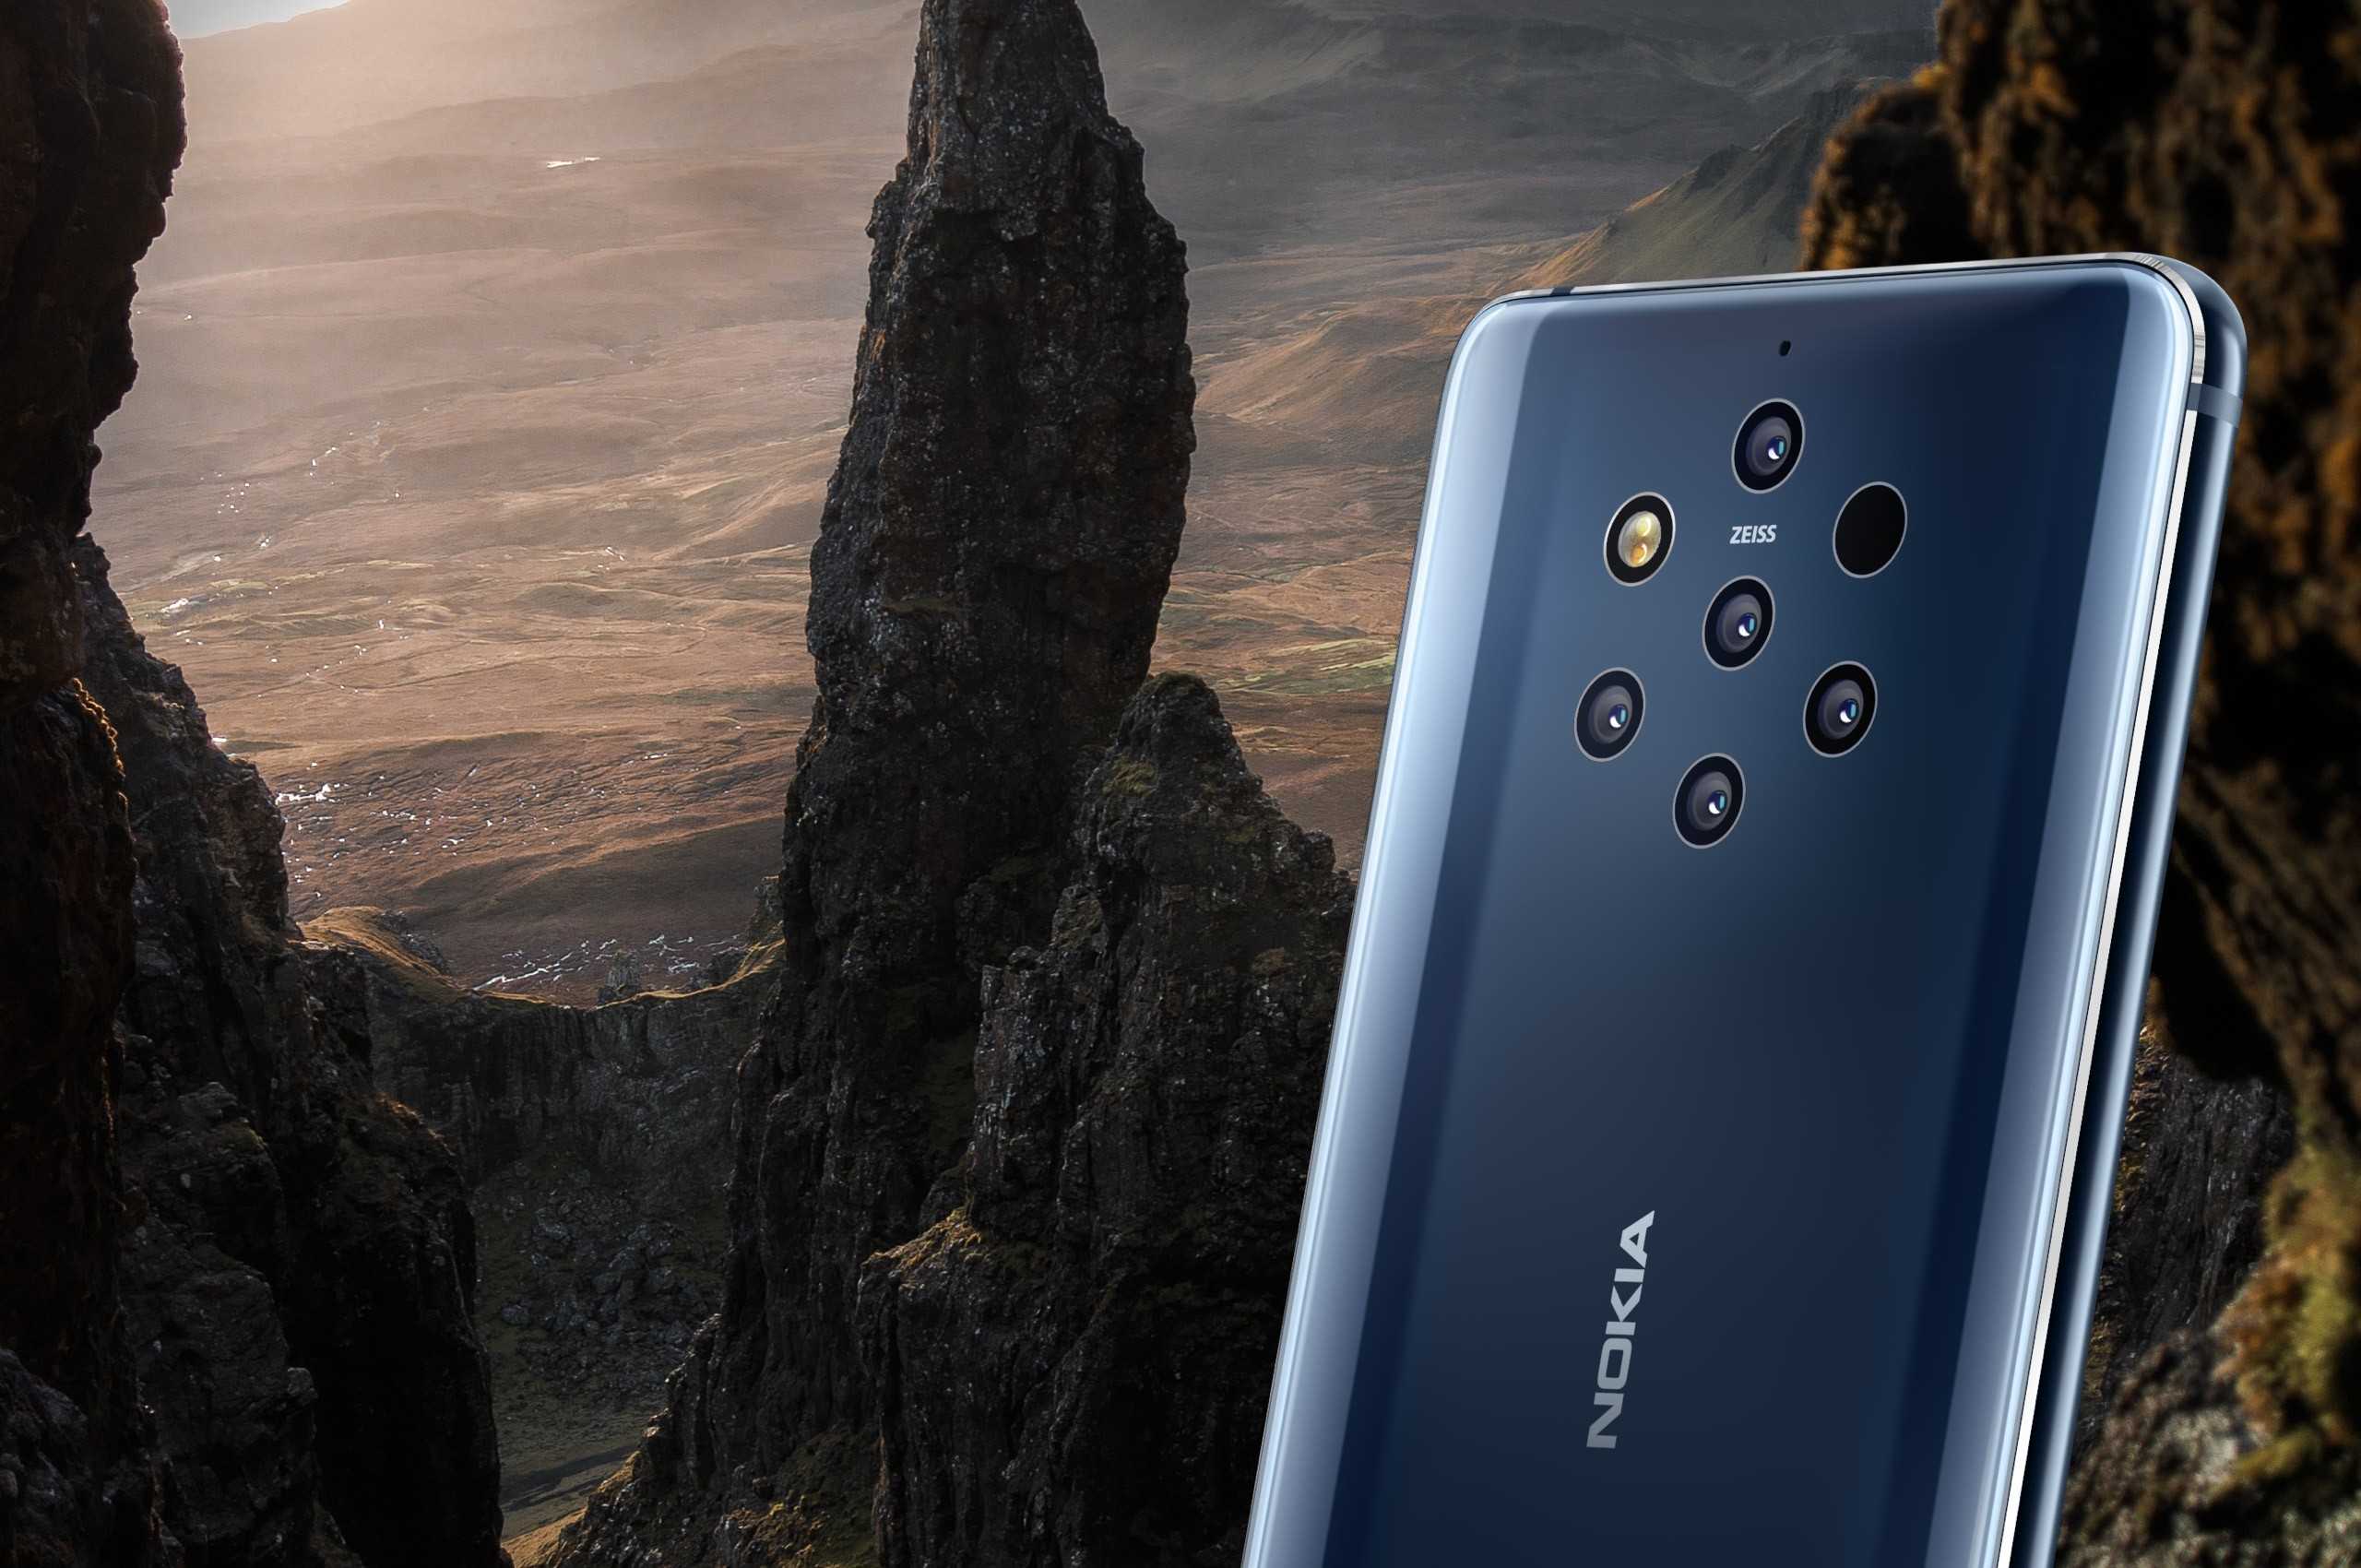 Преимущества и недостатки новой Nokia 9 Pureview - стоит ли гаджет своих денег? Разбираемся, настолько ли крута камера и есть ли что-то интересное в смартфоне кроме нее?